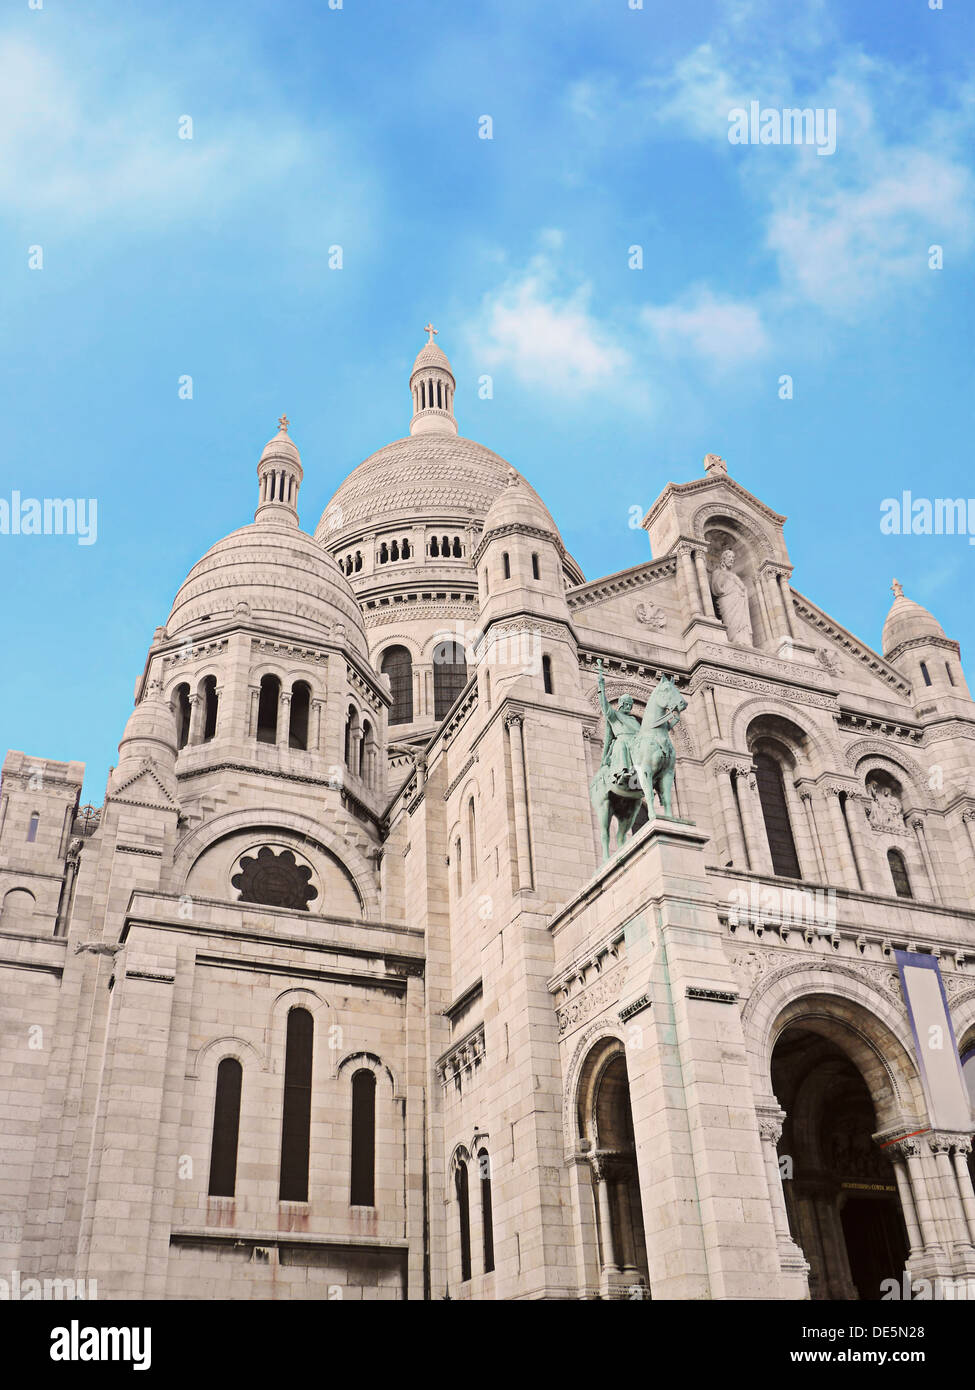 Sacre-Coeur Basilica on Montmartre, Paris, France Stock Photo